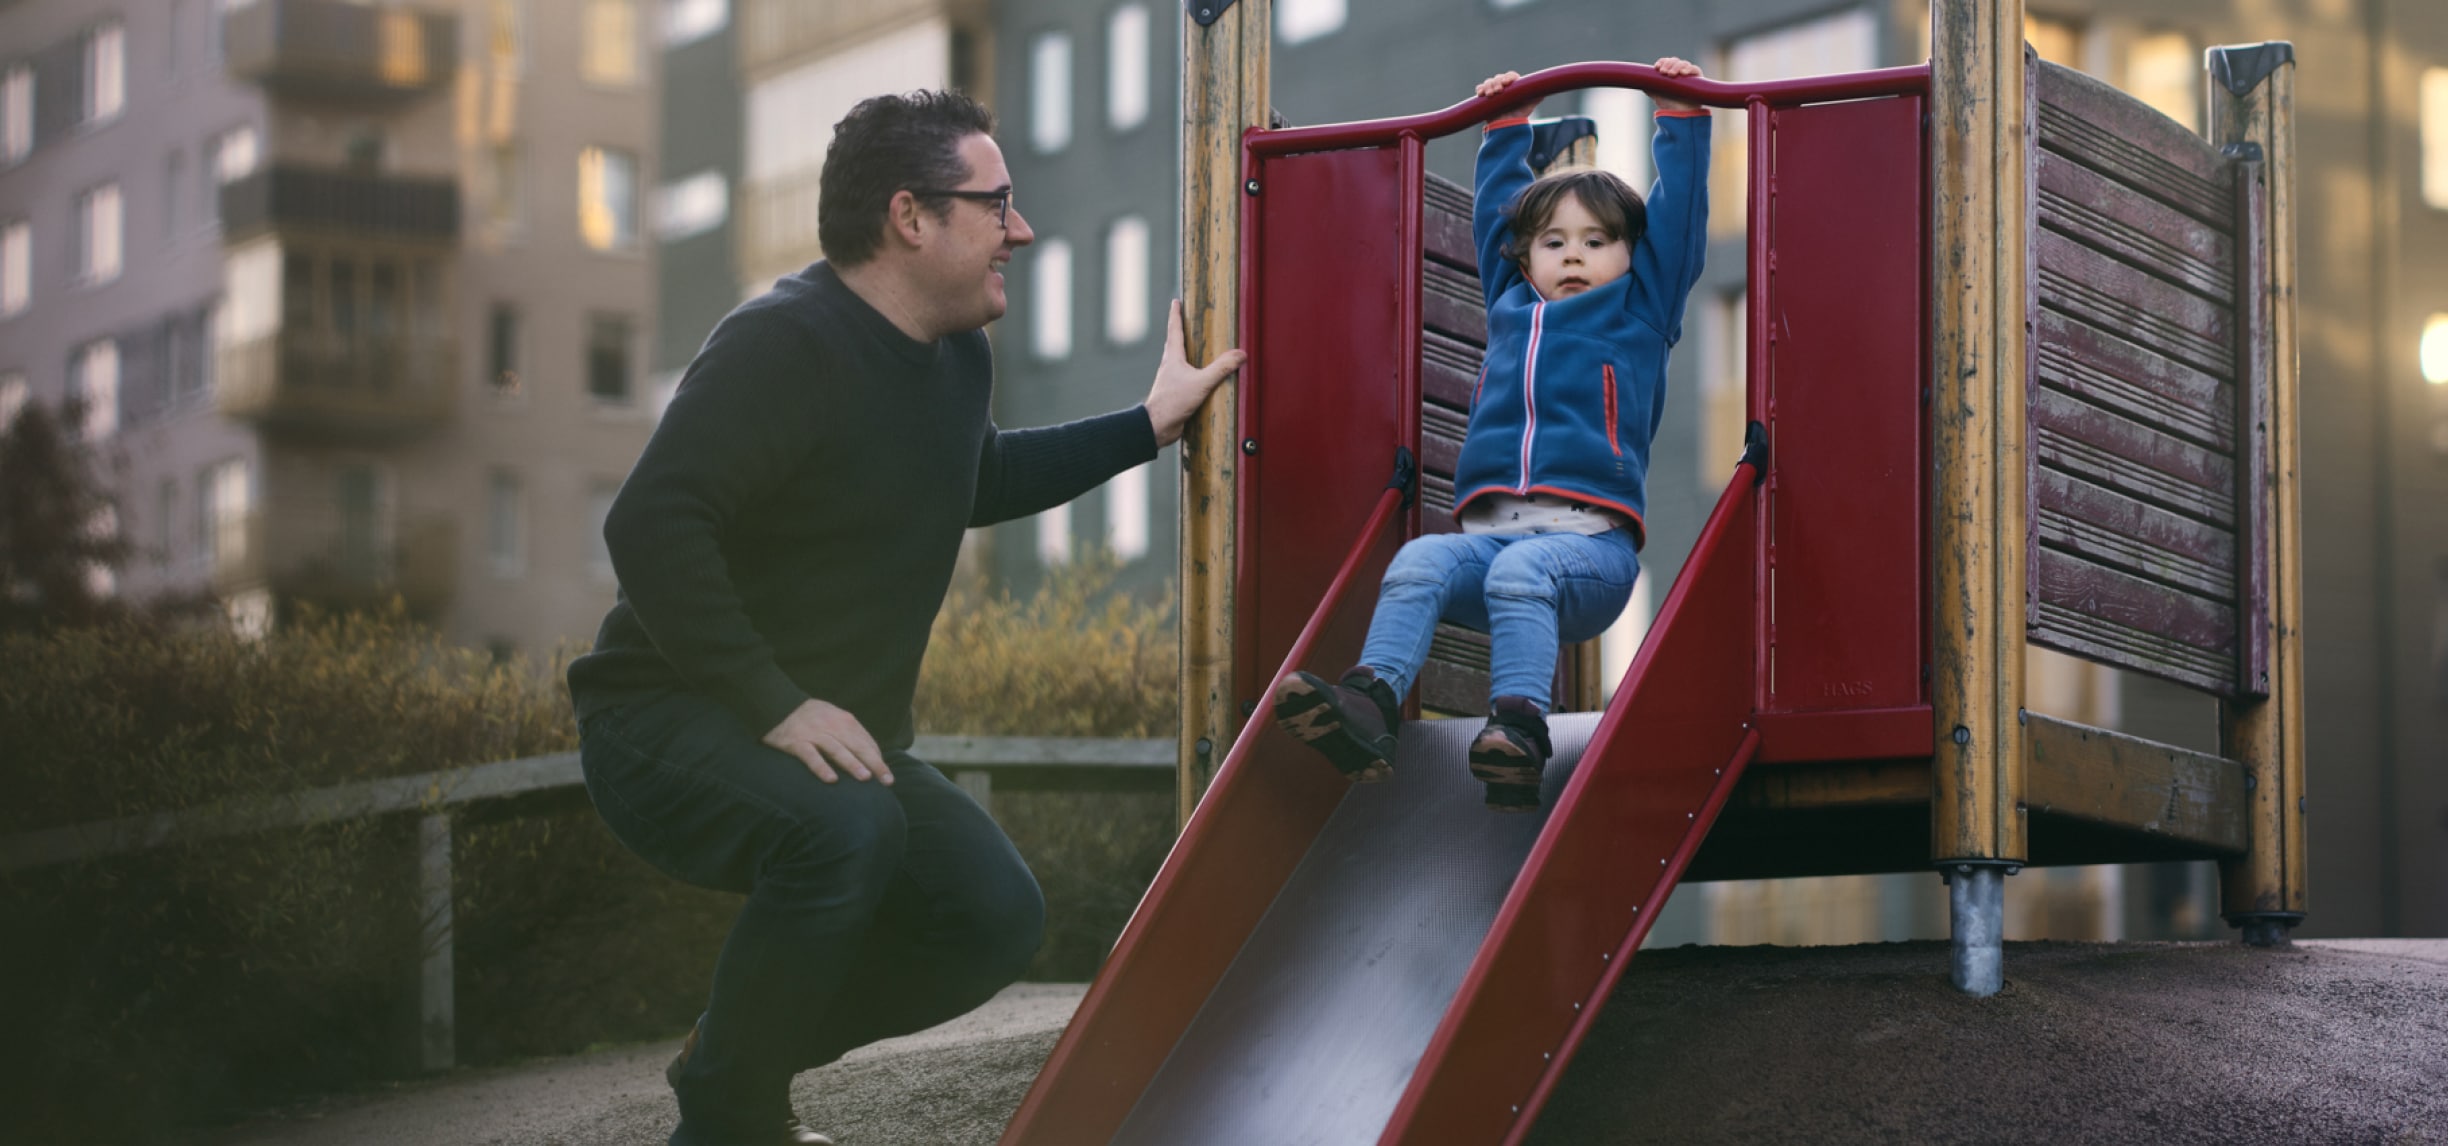 En mand smiler til et lille barn, der kommer ned ad en rutsjebane i et legeområde for børn.